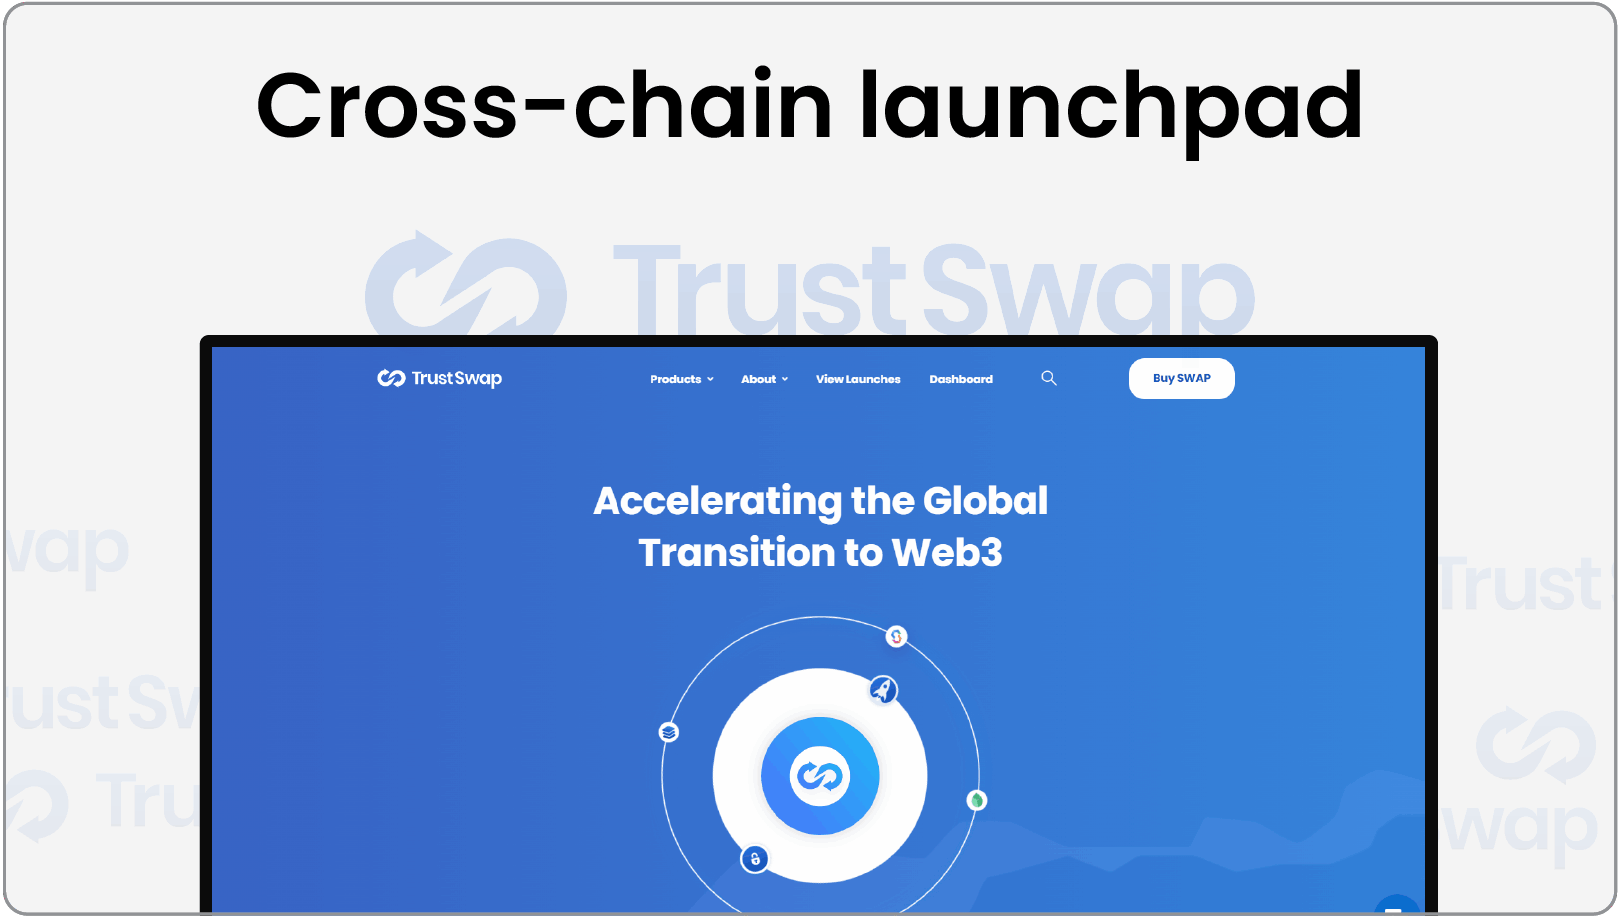 Cross-chain Launchpad